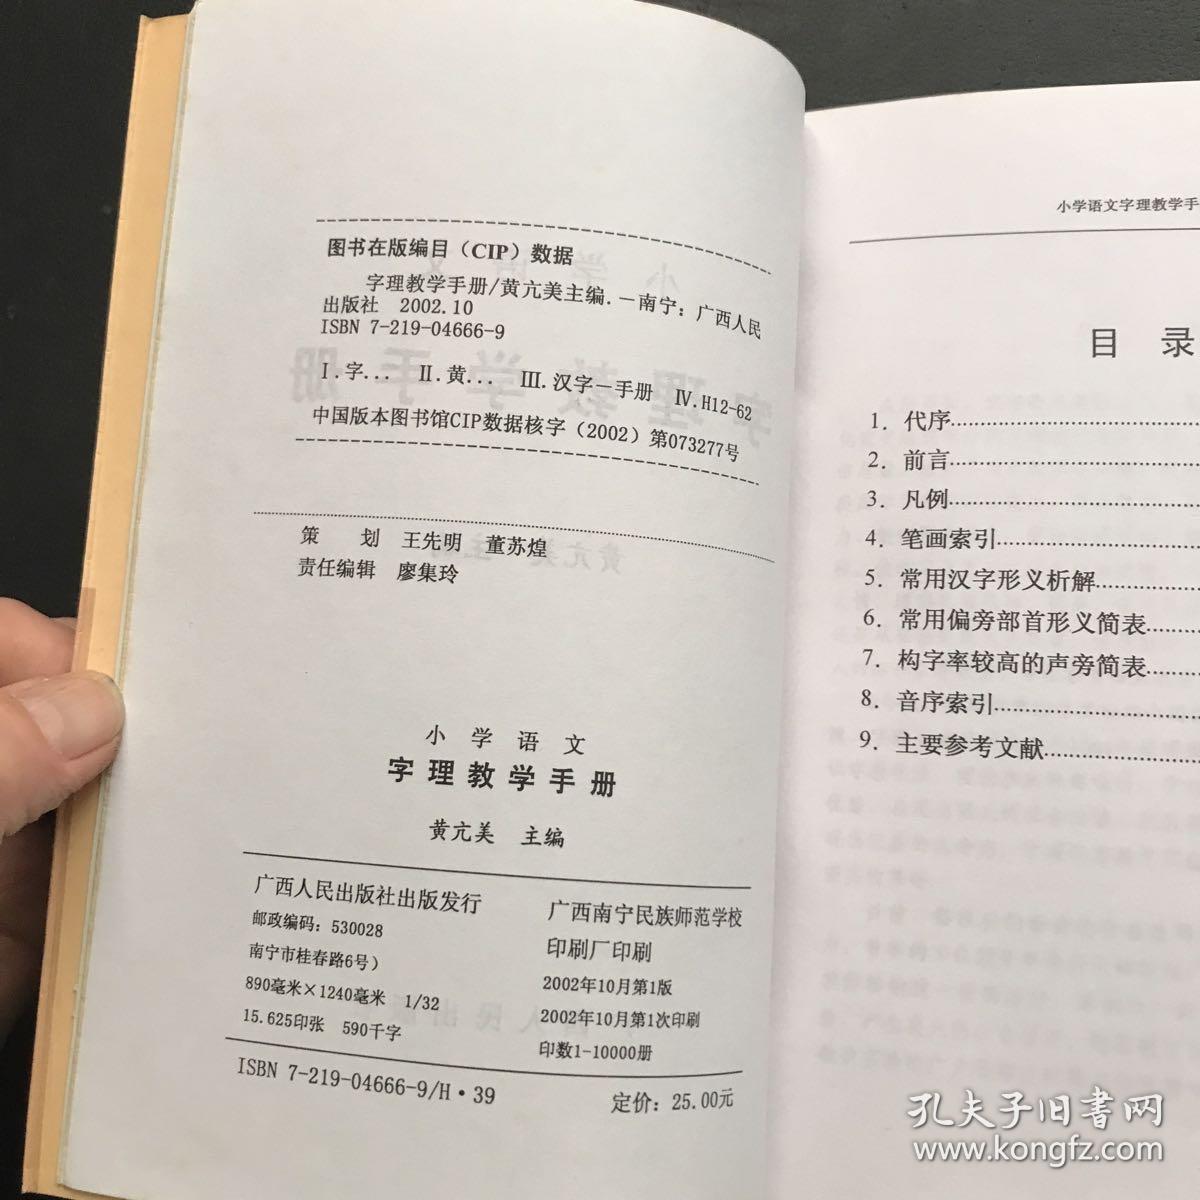 小学语文字理教学手册